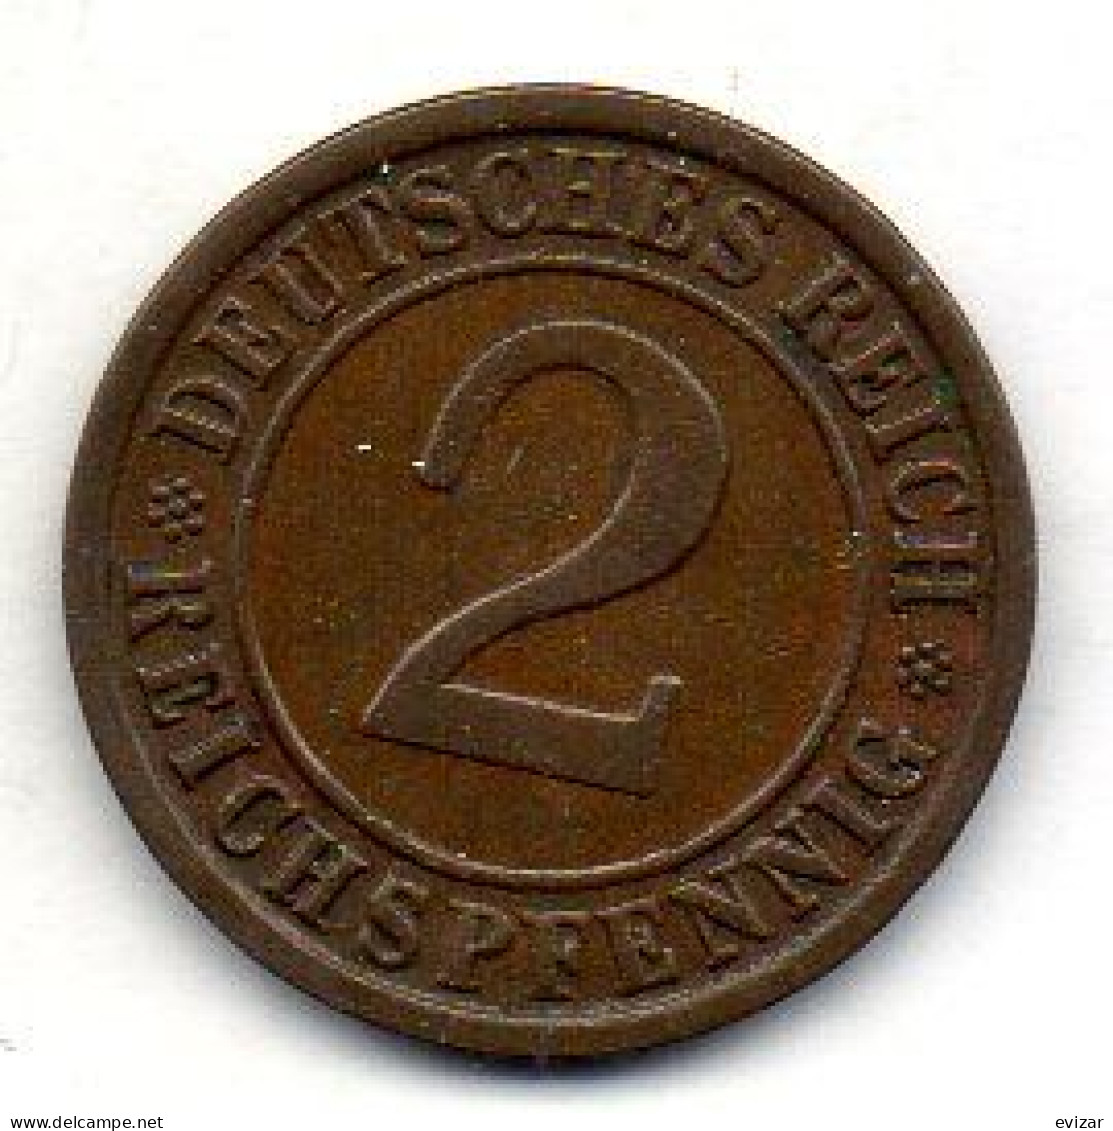 GERMANY - WEIMAR REPUBLIC, 2 Reichs Pfennig, Bronze, Year 1936-A, KM # 38 - 2 Rentenpfennig & 2 Reichspfennig